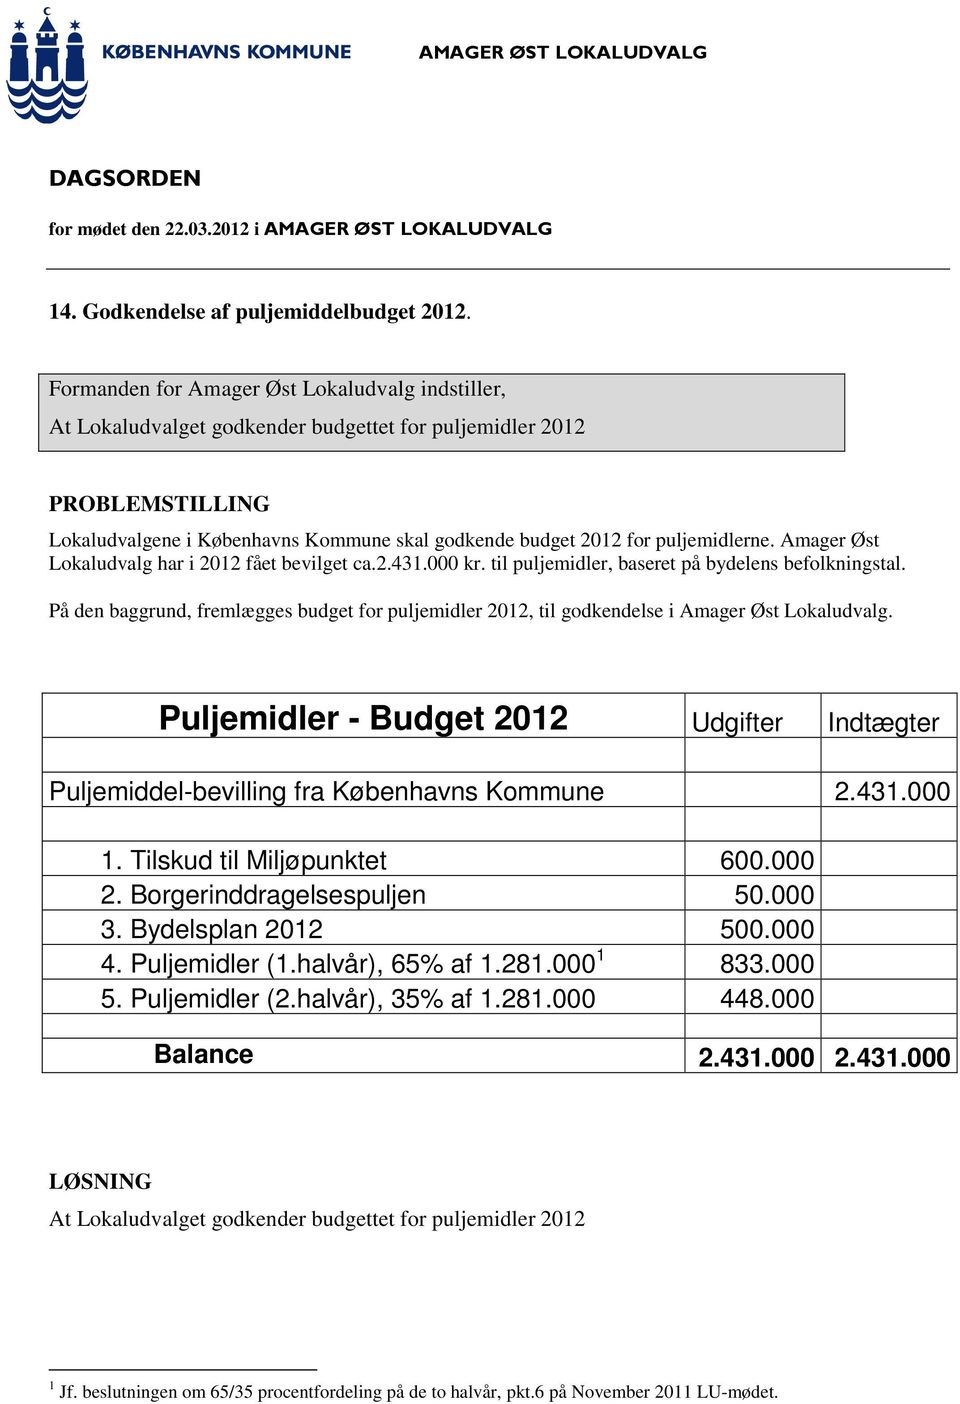 Amager Øst Lokaludvalg har i 2012 fået bevilget ca.2.431.000 kr. til puljemidler, baseret på bydelens befolkningstal.